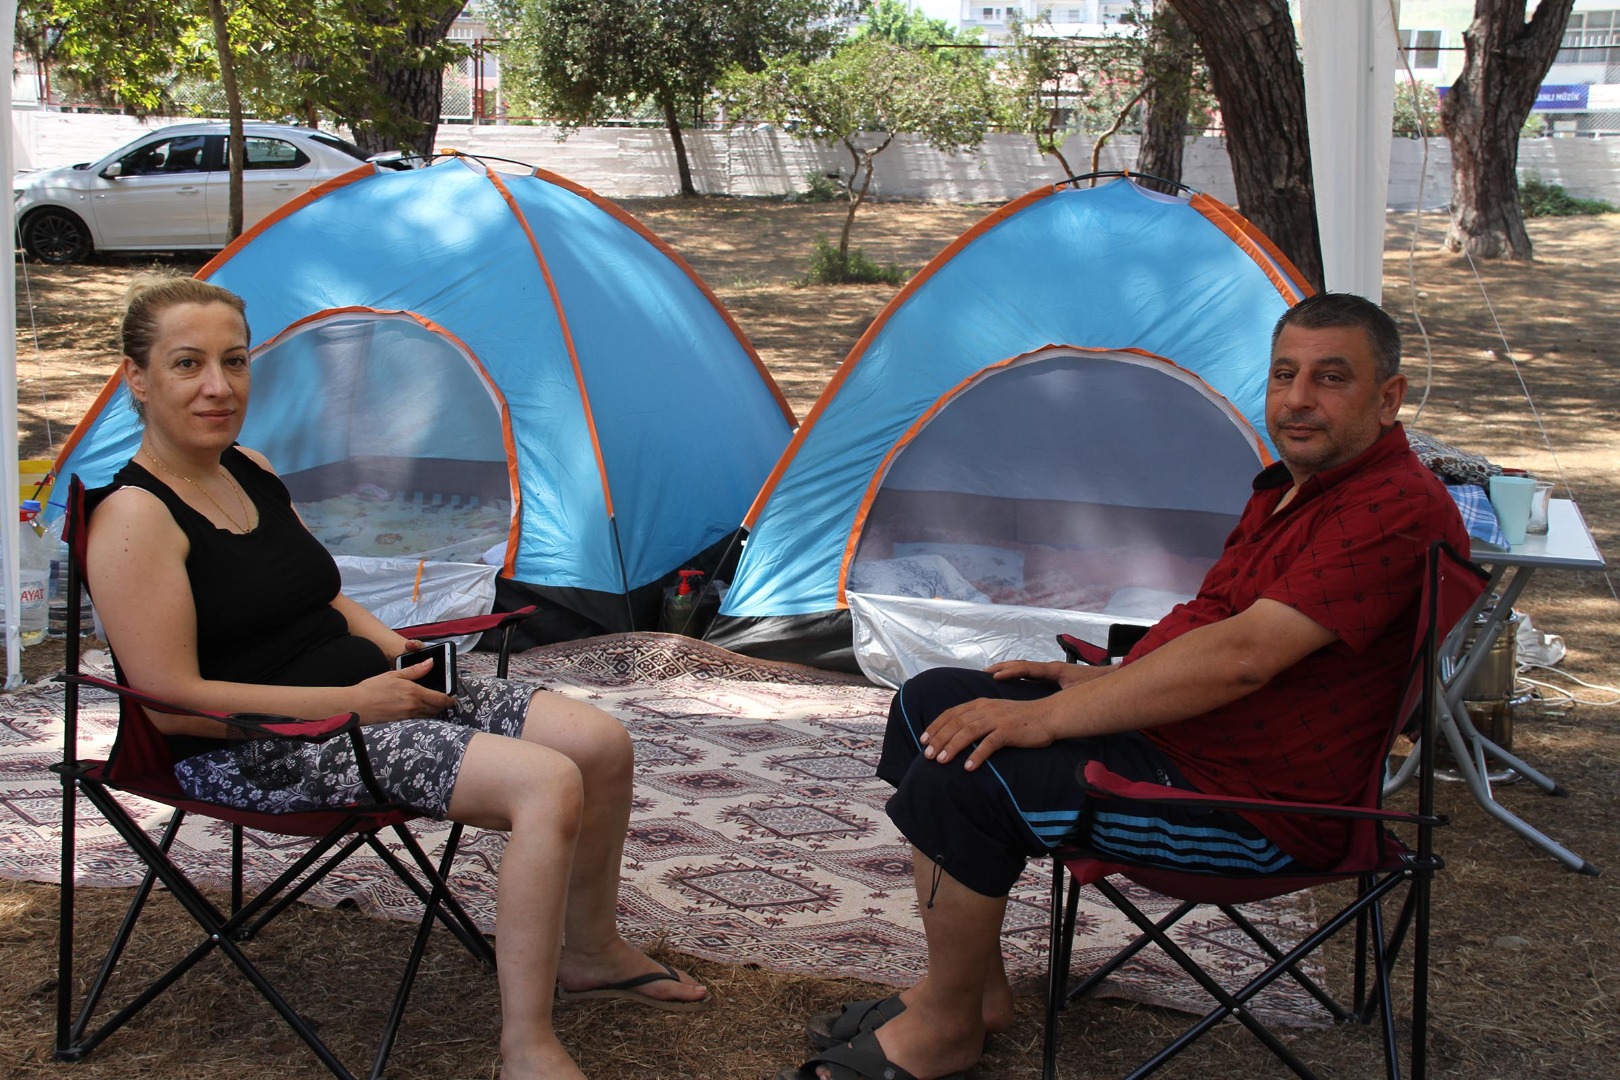 Kamplarda çadır kuracak yer kalmadı